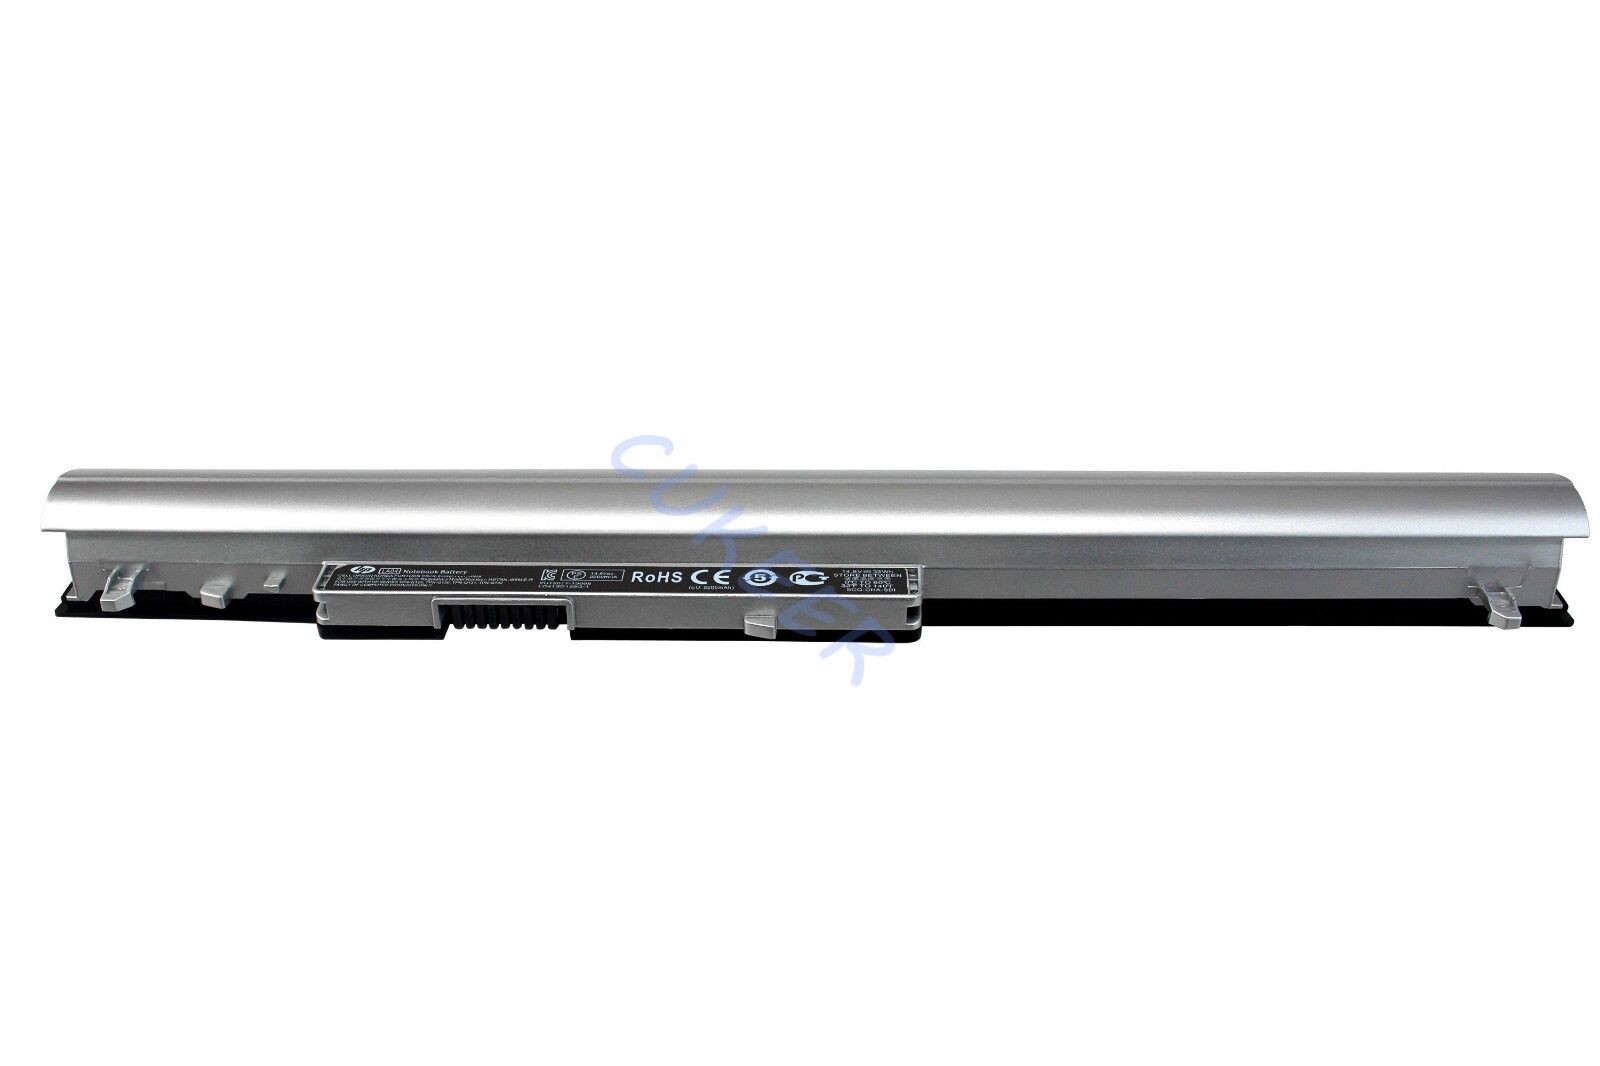 4Cells Genuine 776622-001 Laptop Battery For LA04 LA03 LA03DF 728460-001 New